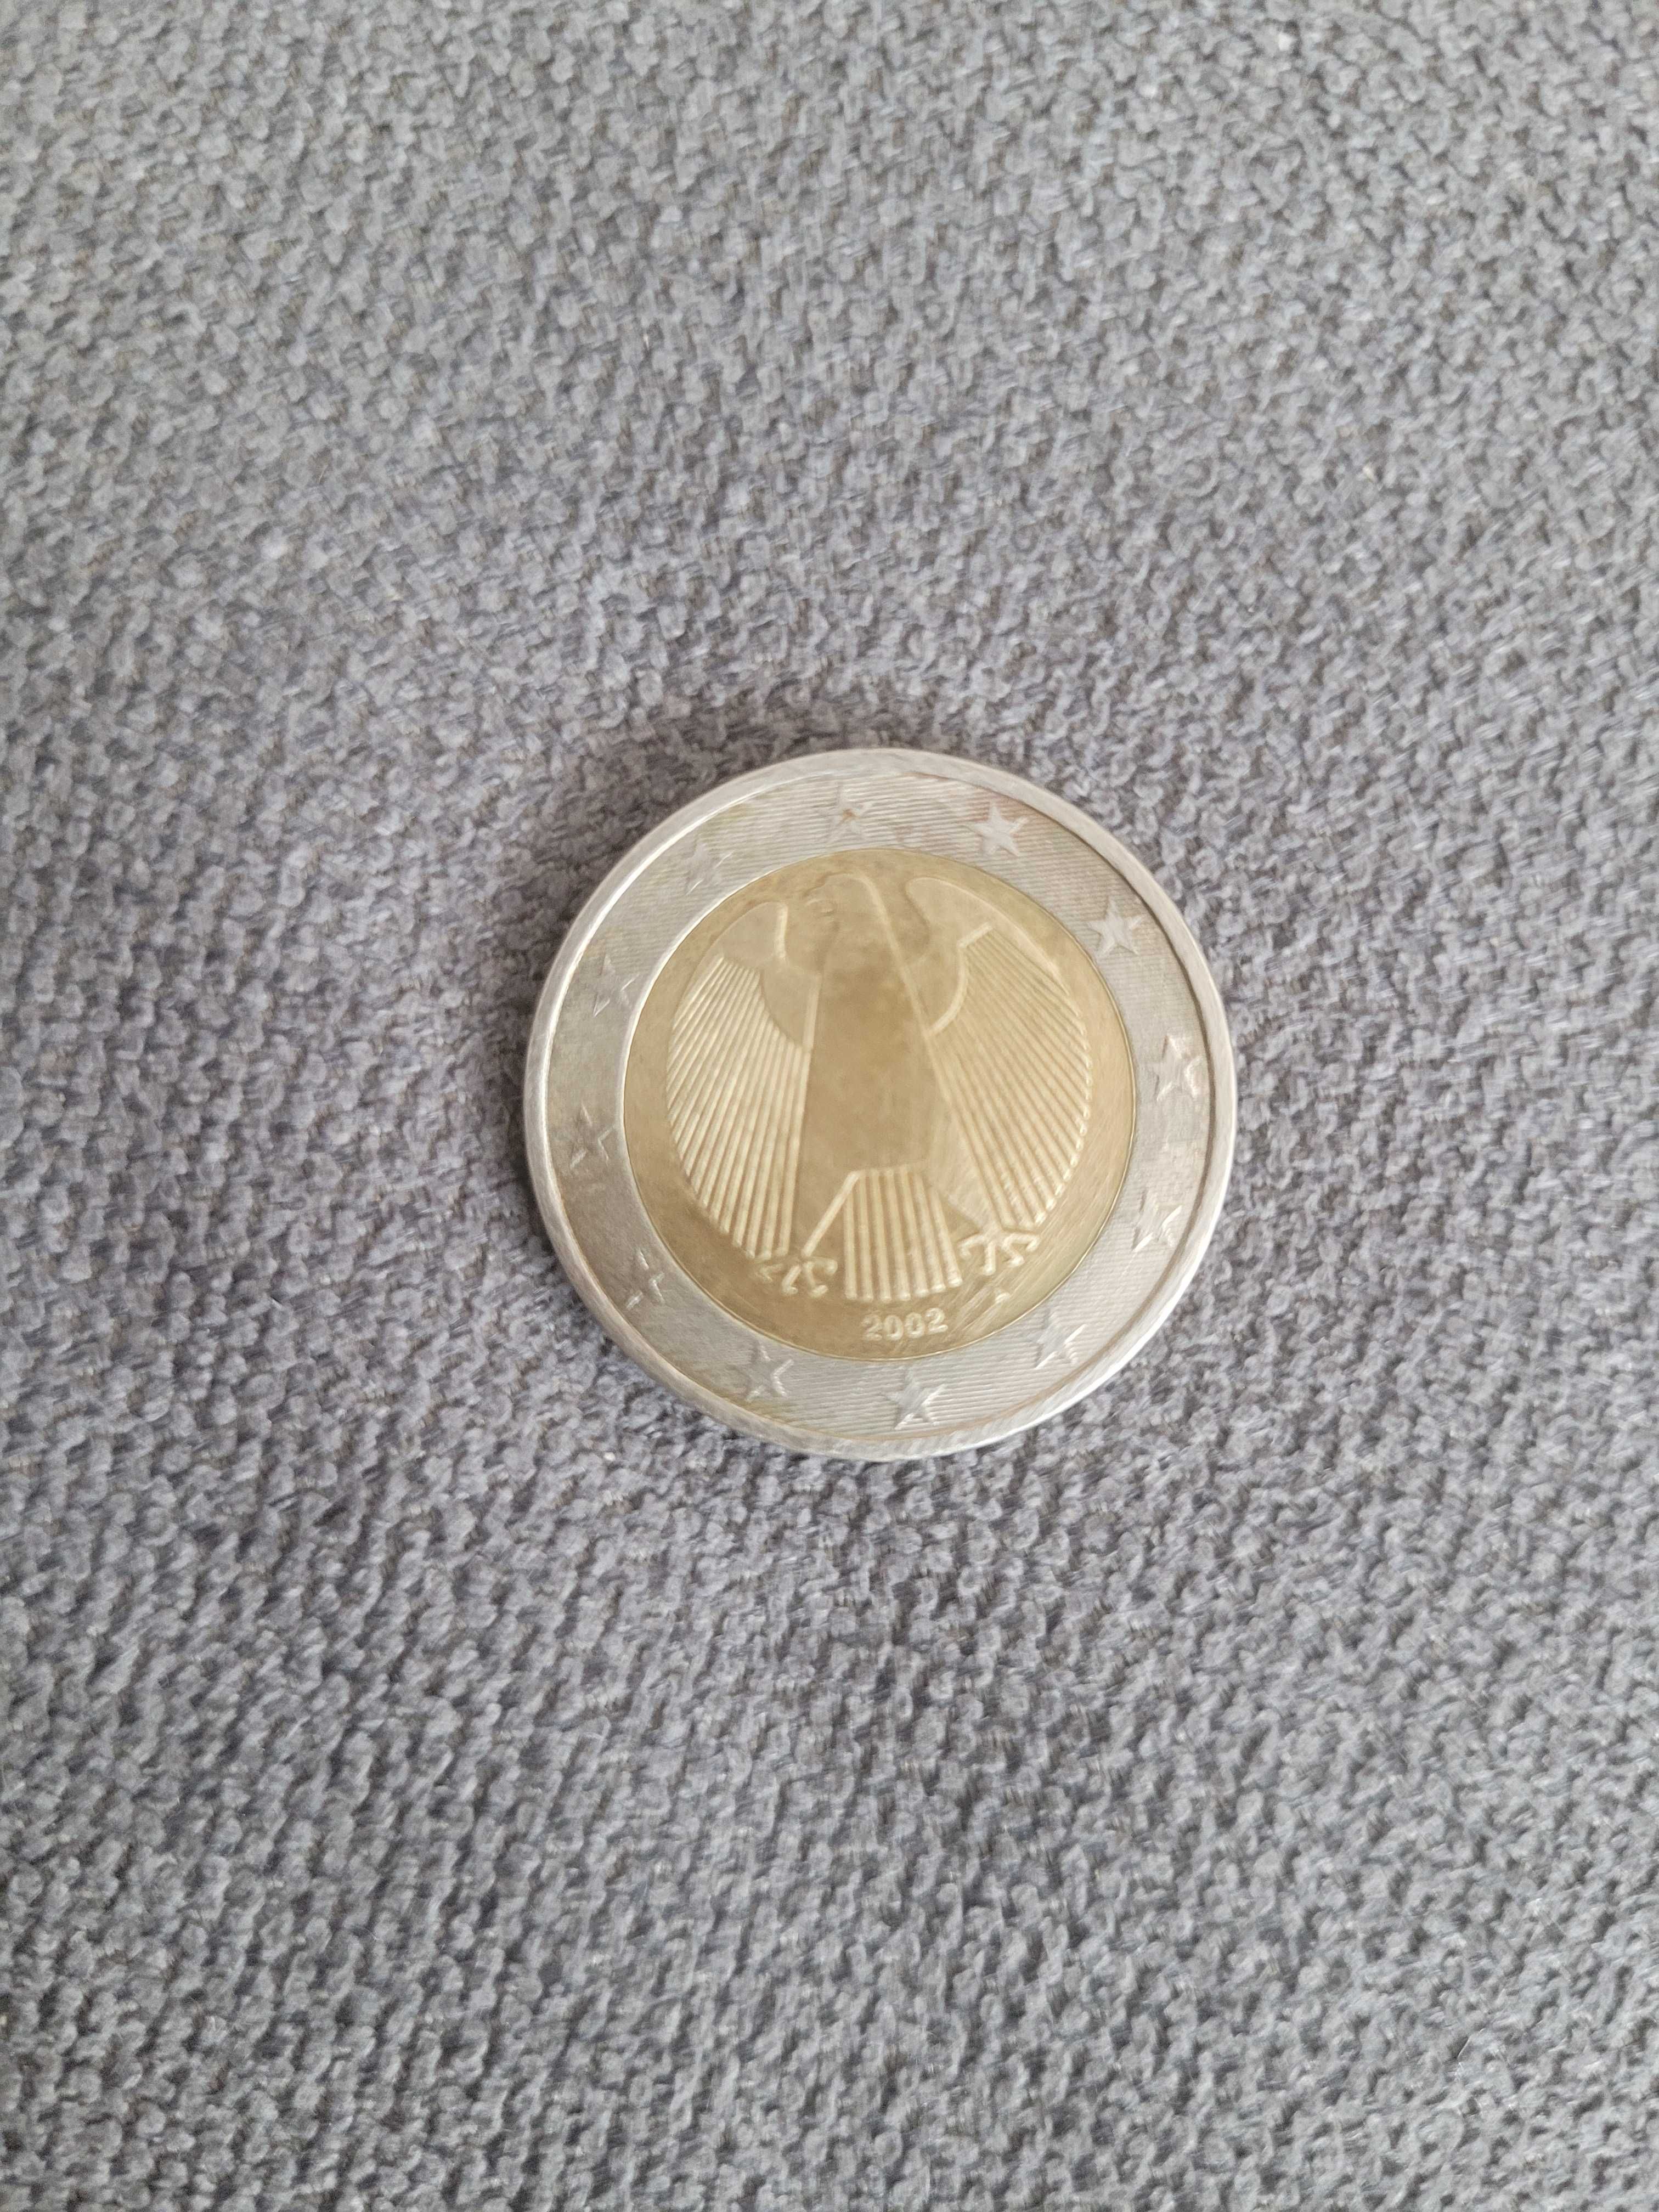 Rara moeda 2€ alemanha 2002 A com defeito de cor